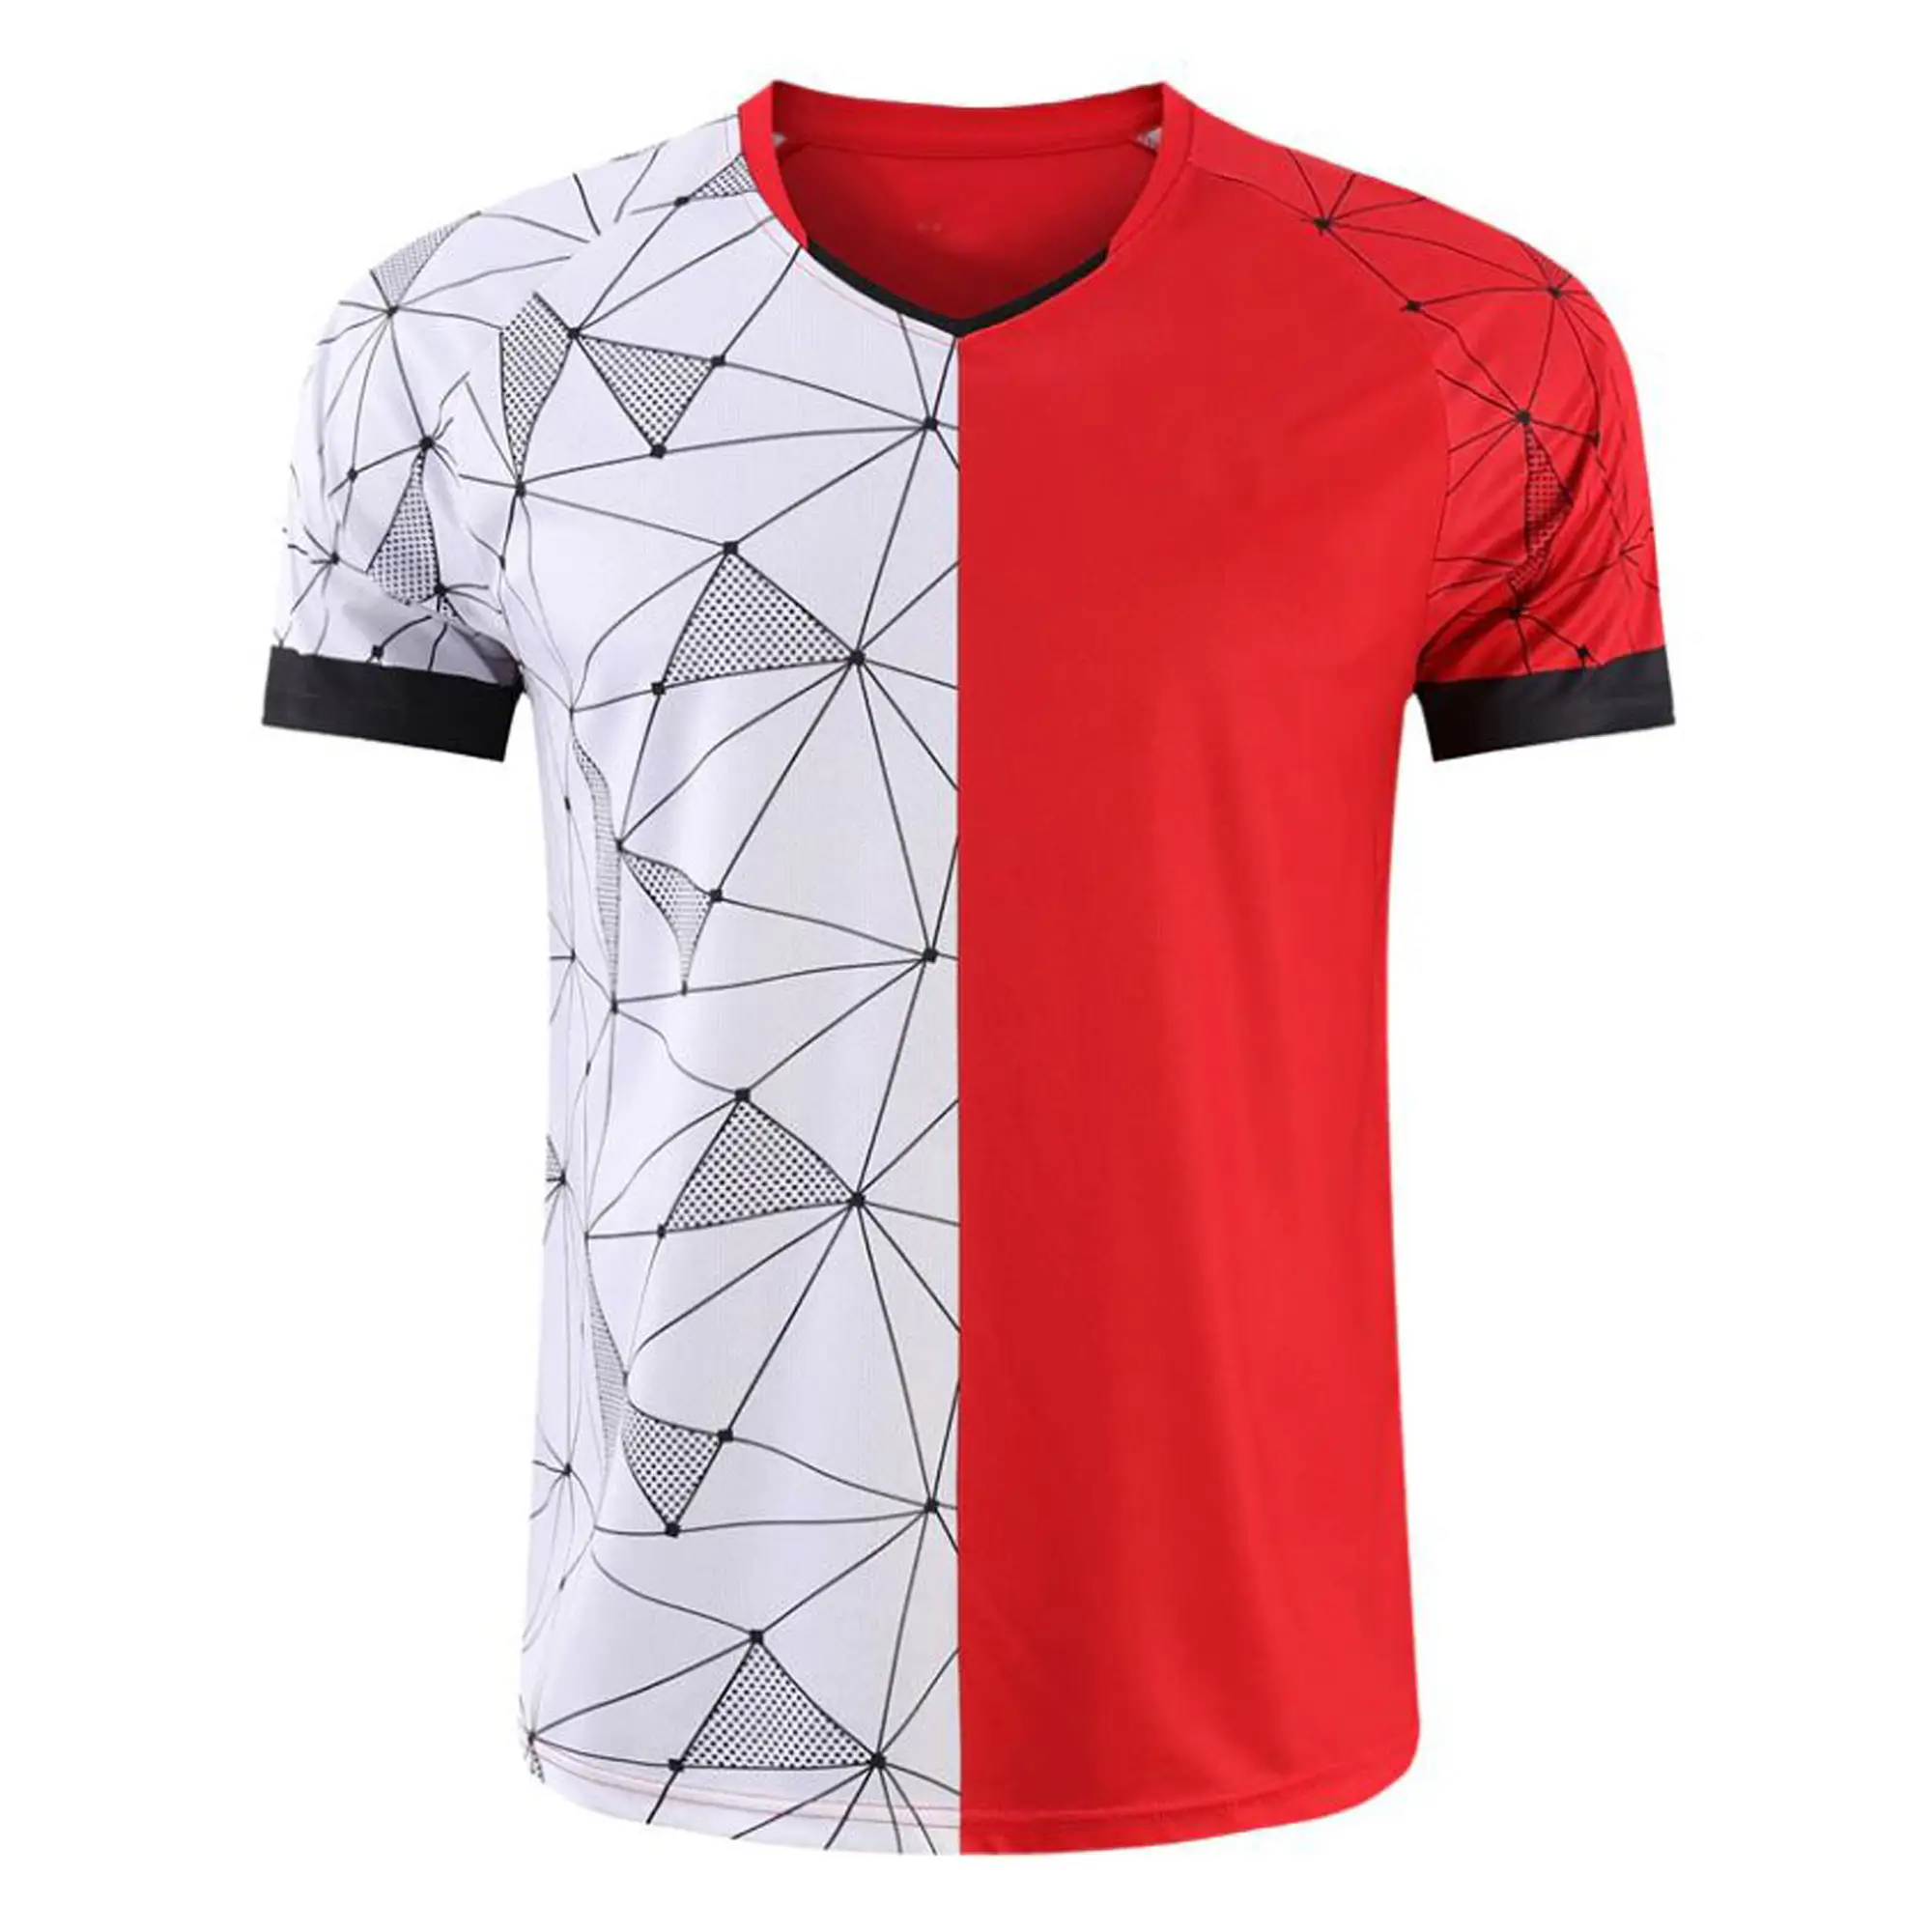 Diseño único, camiseta de fútbol, ropa deportiva, fabricantes y proveedores de ropa de alta calidad de Pakistán